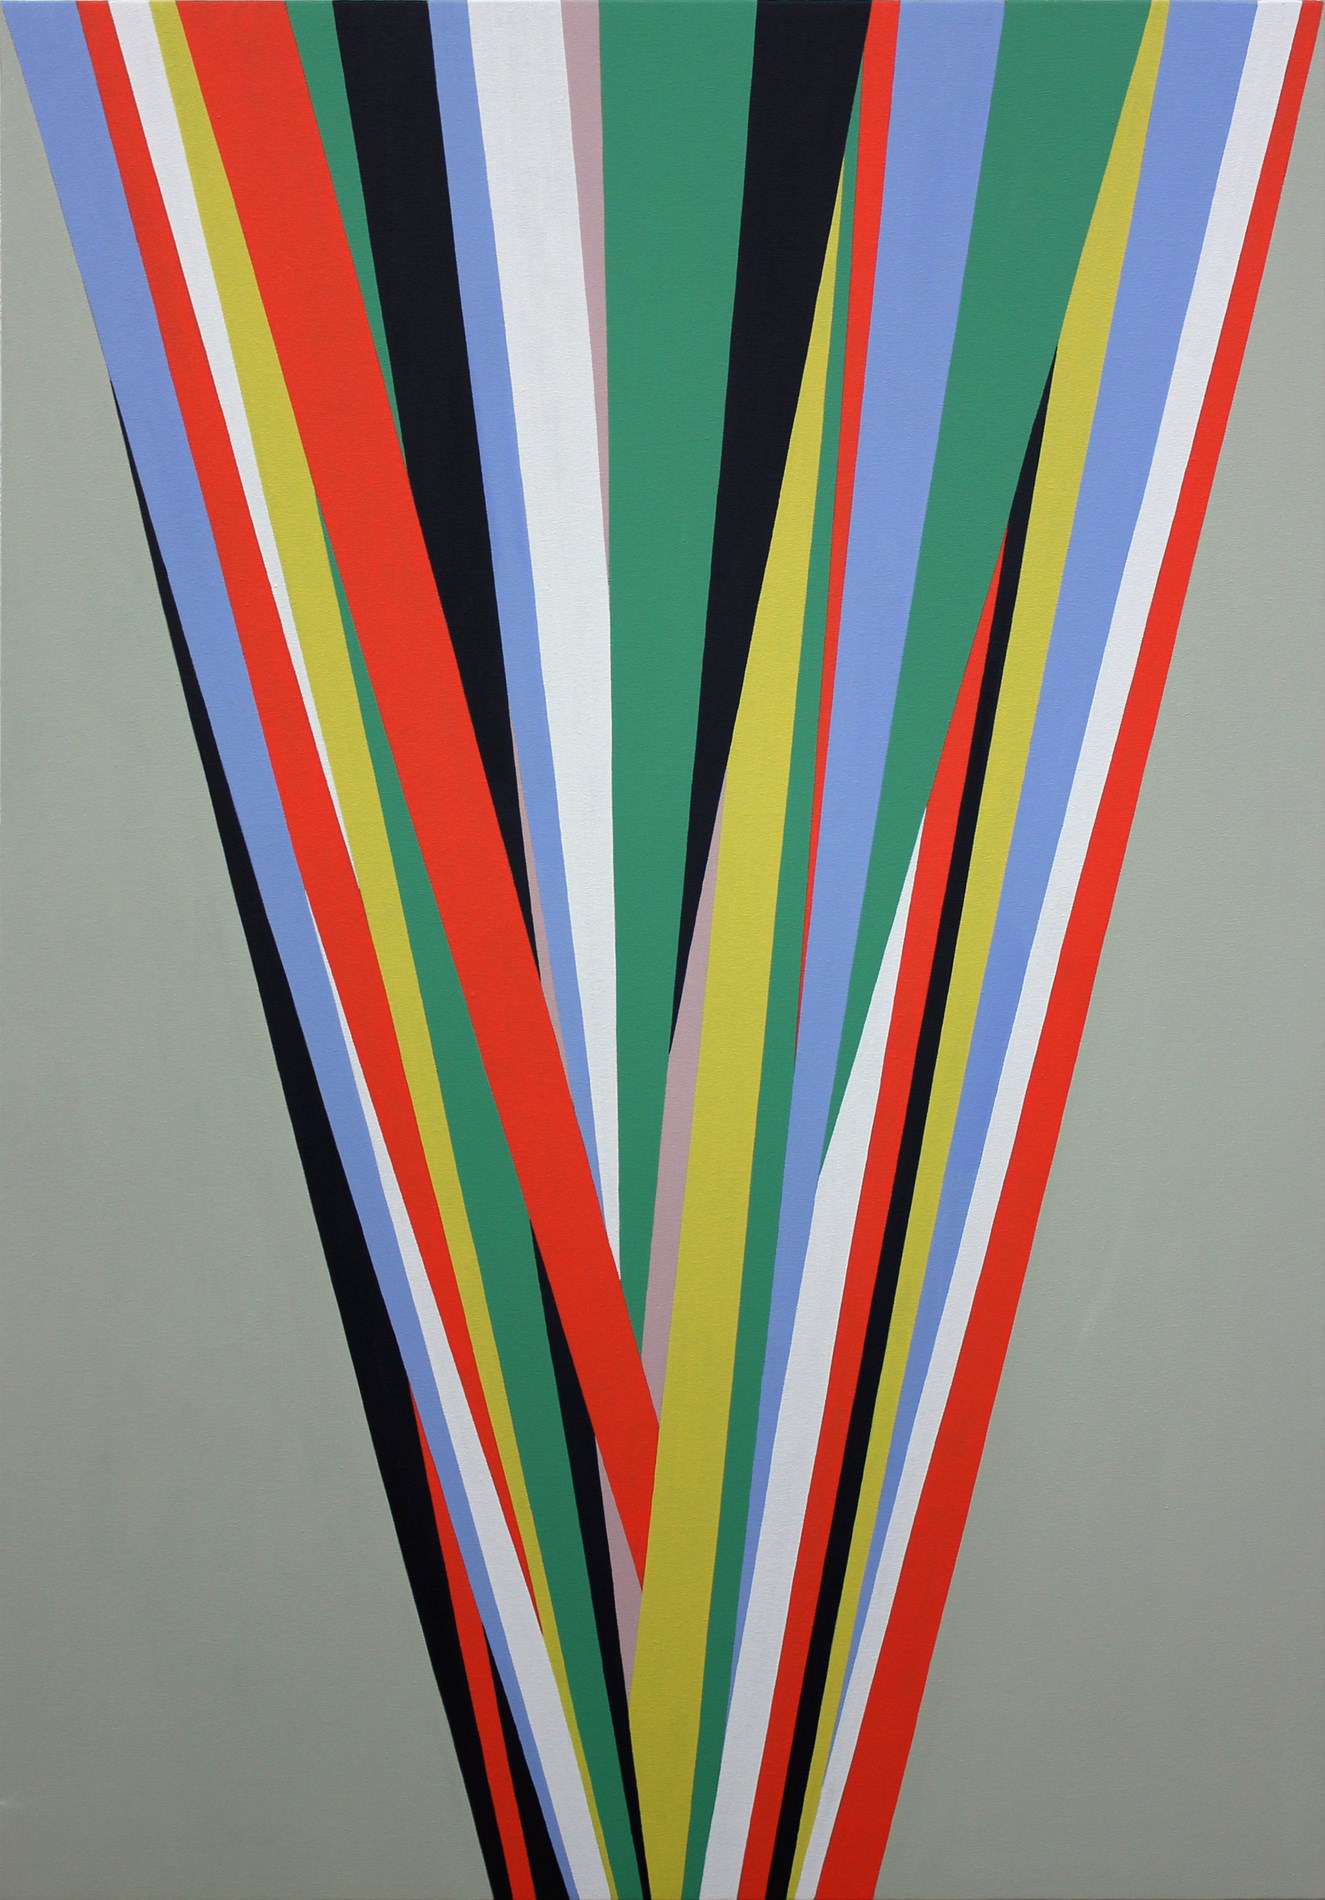 Memorias imaginadas, 2012, acrílico sobre lienzo, 130 x 89 cm.